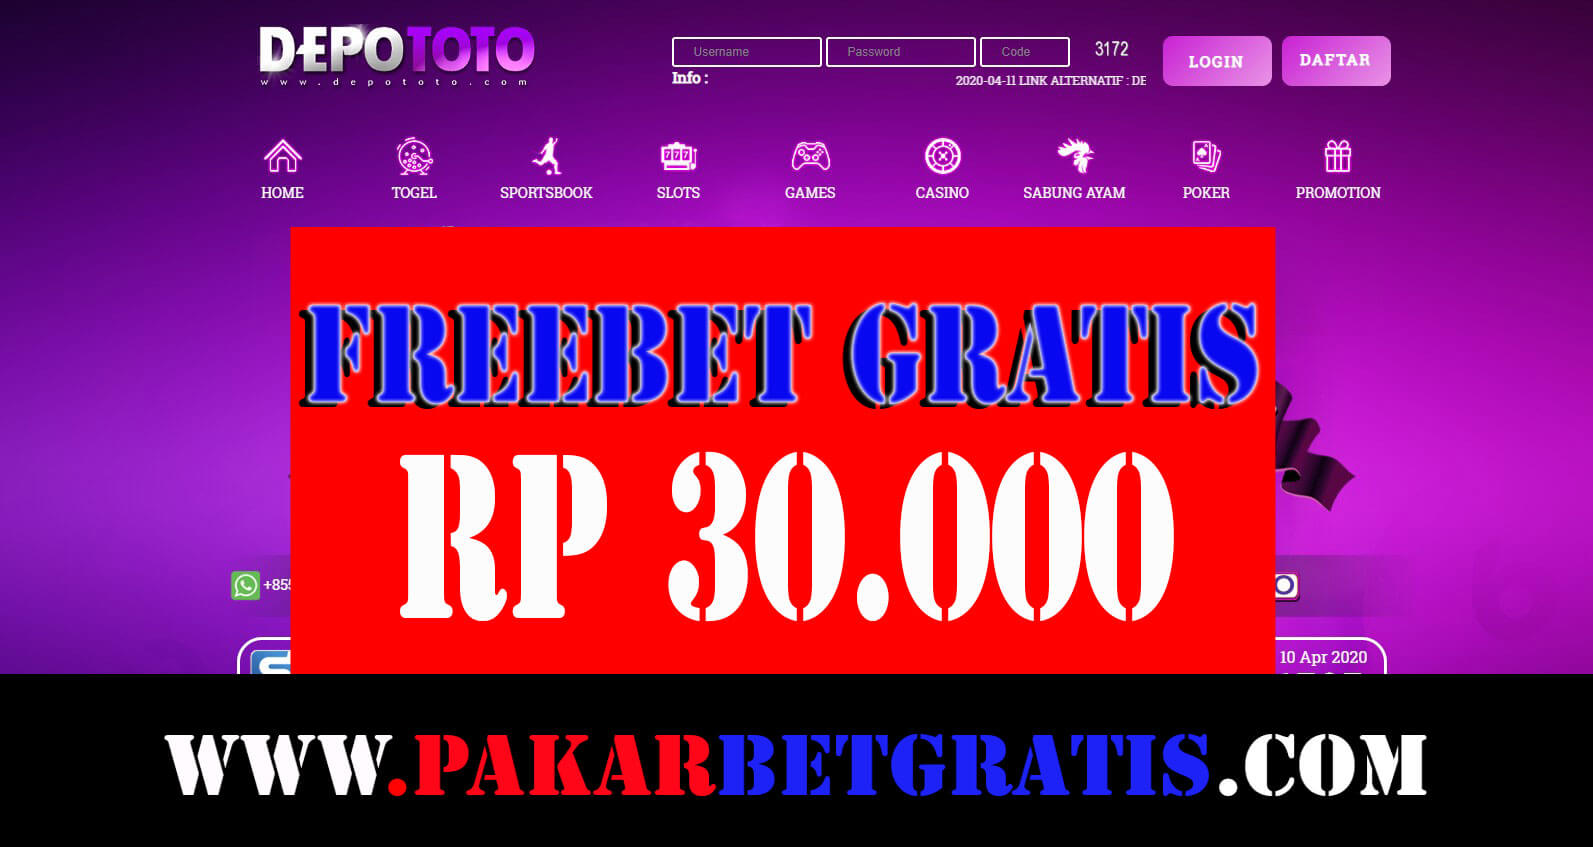 Depototo Freebet Gratis Rp 30.000 Tanpa deposit